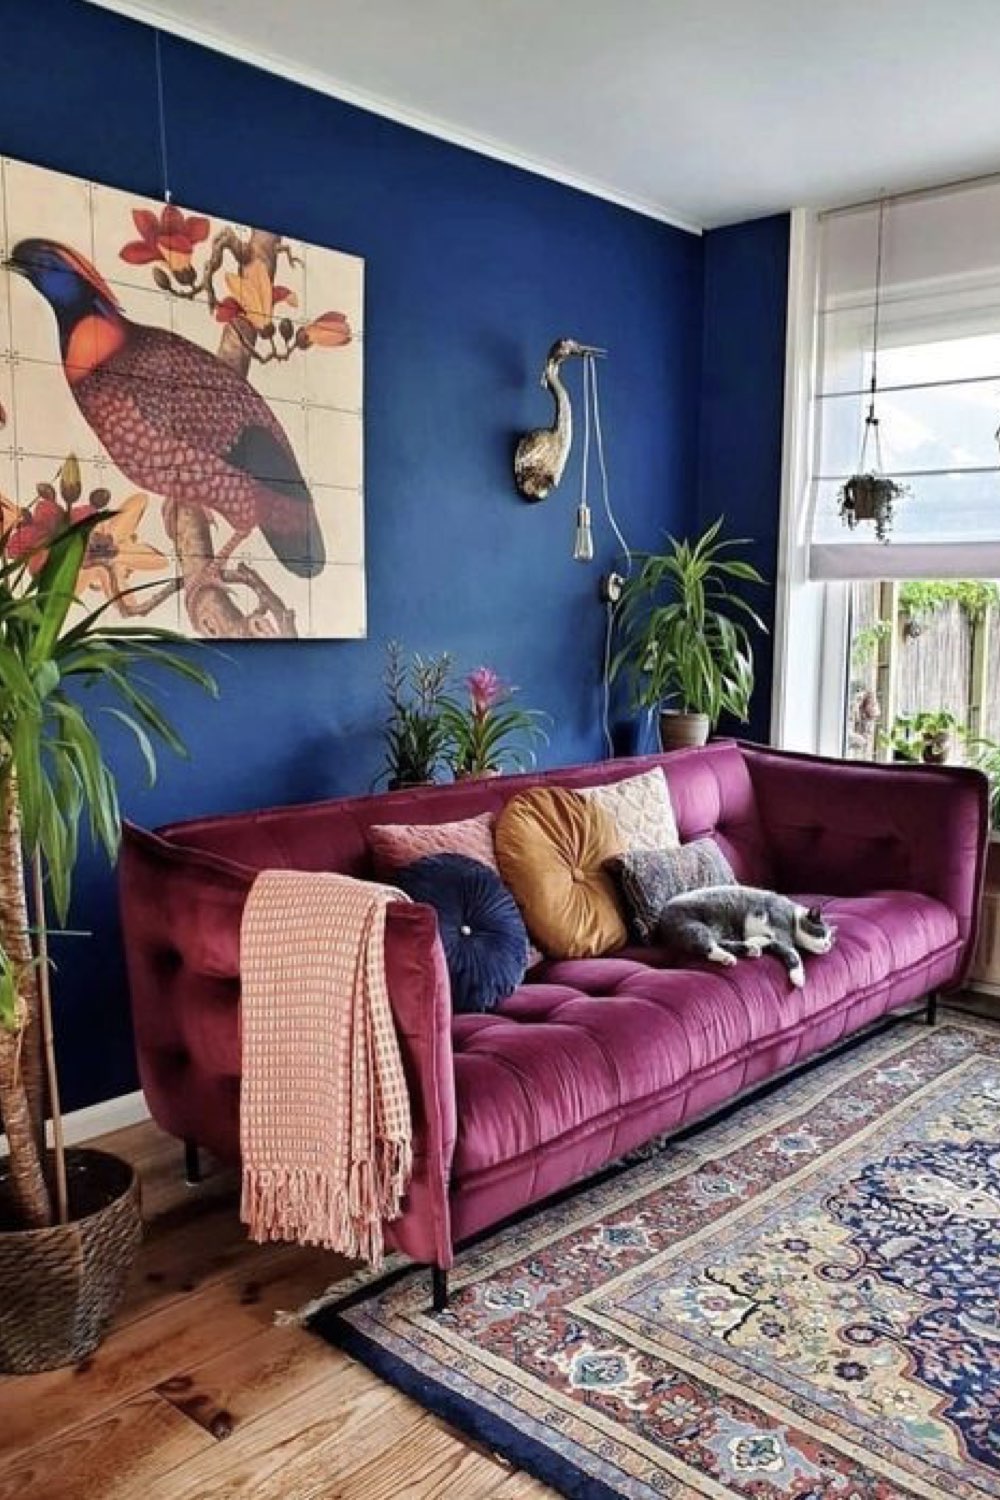 comment reussir deco salon décor original peinture mur bleu électrique canapé rose violet en velours tableau XXL oiseau